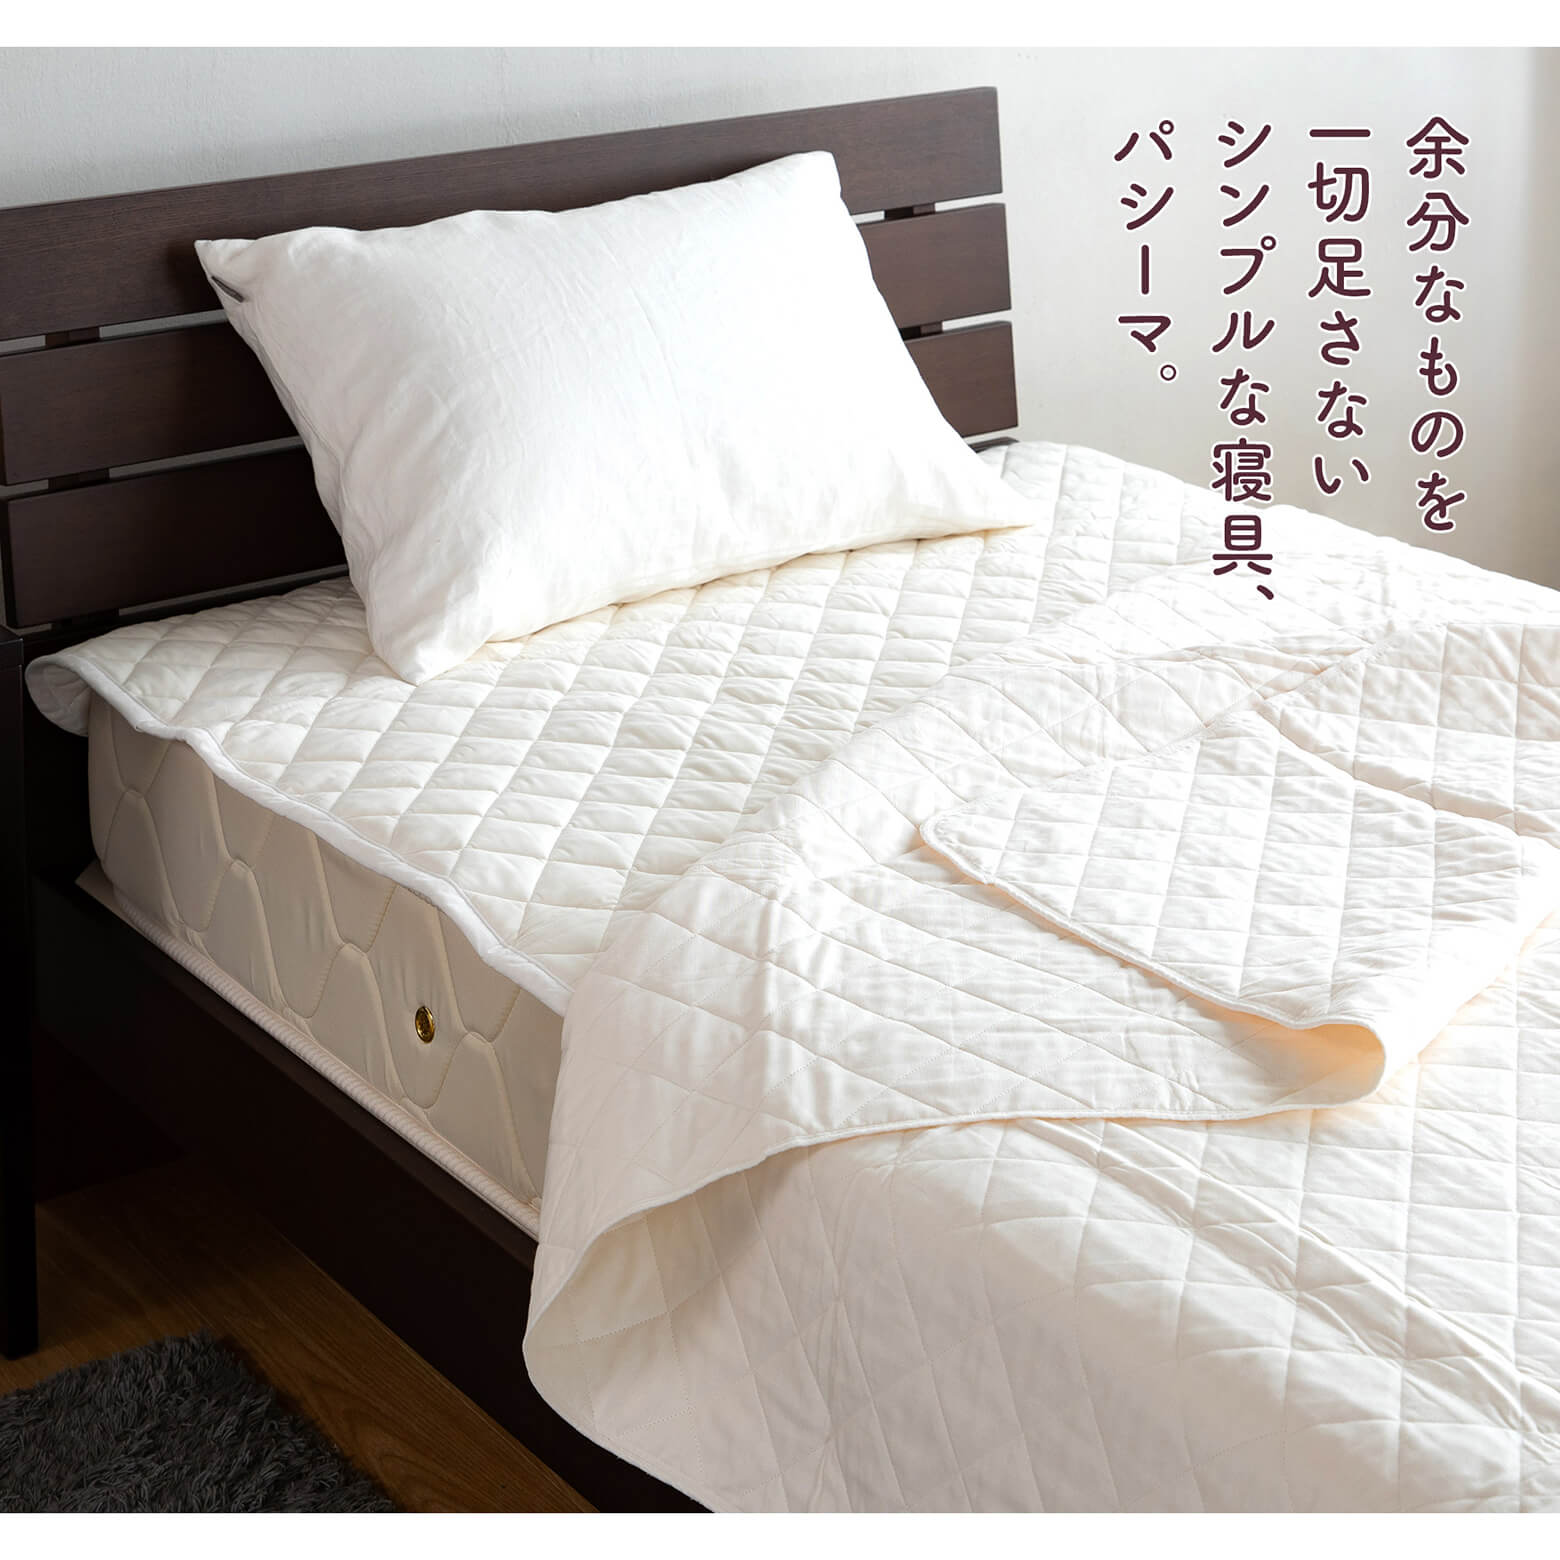 ダブル】パシーマ パットシーツ ダブル(155×210cm) 日本最大級のベッド専門店 ビーナスベッド